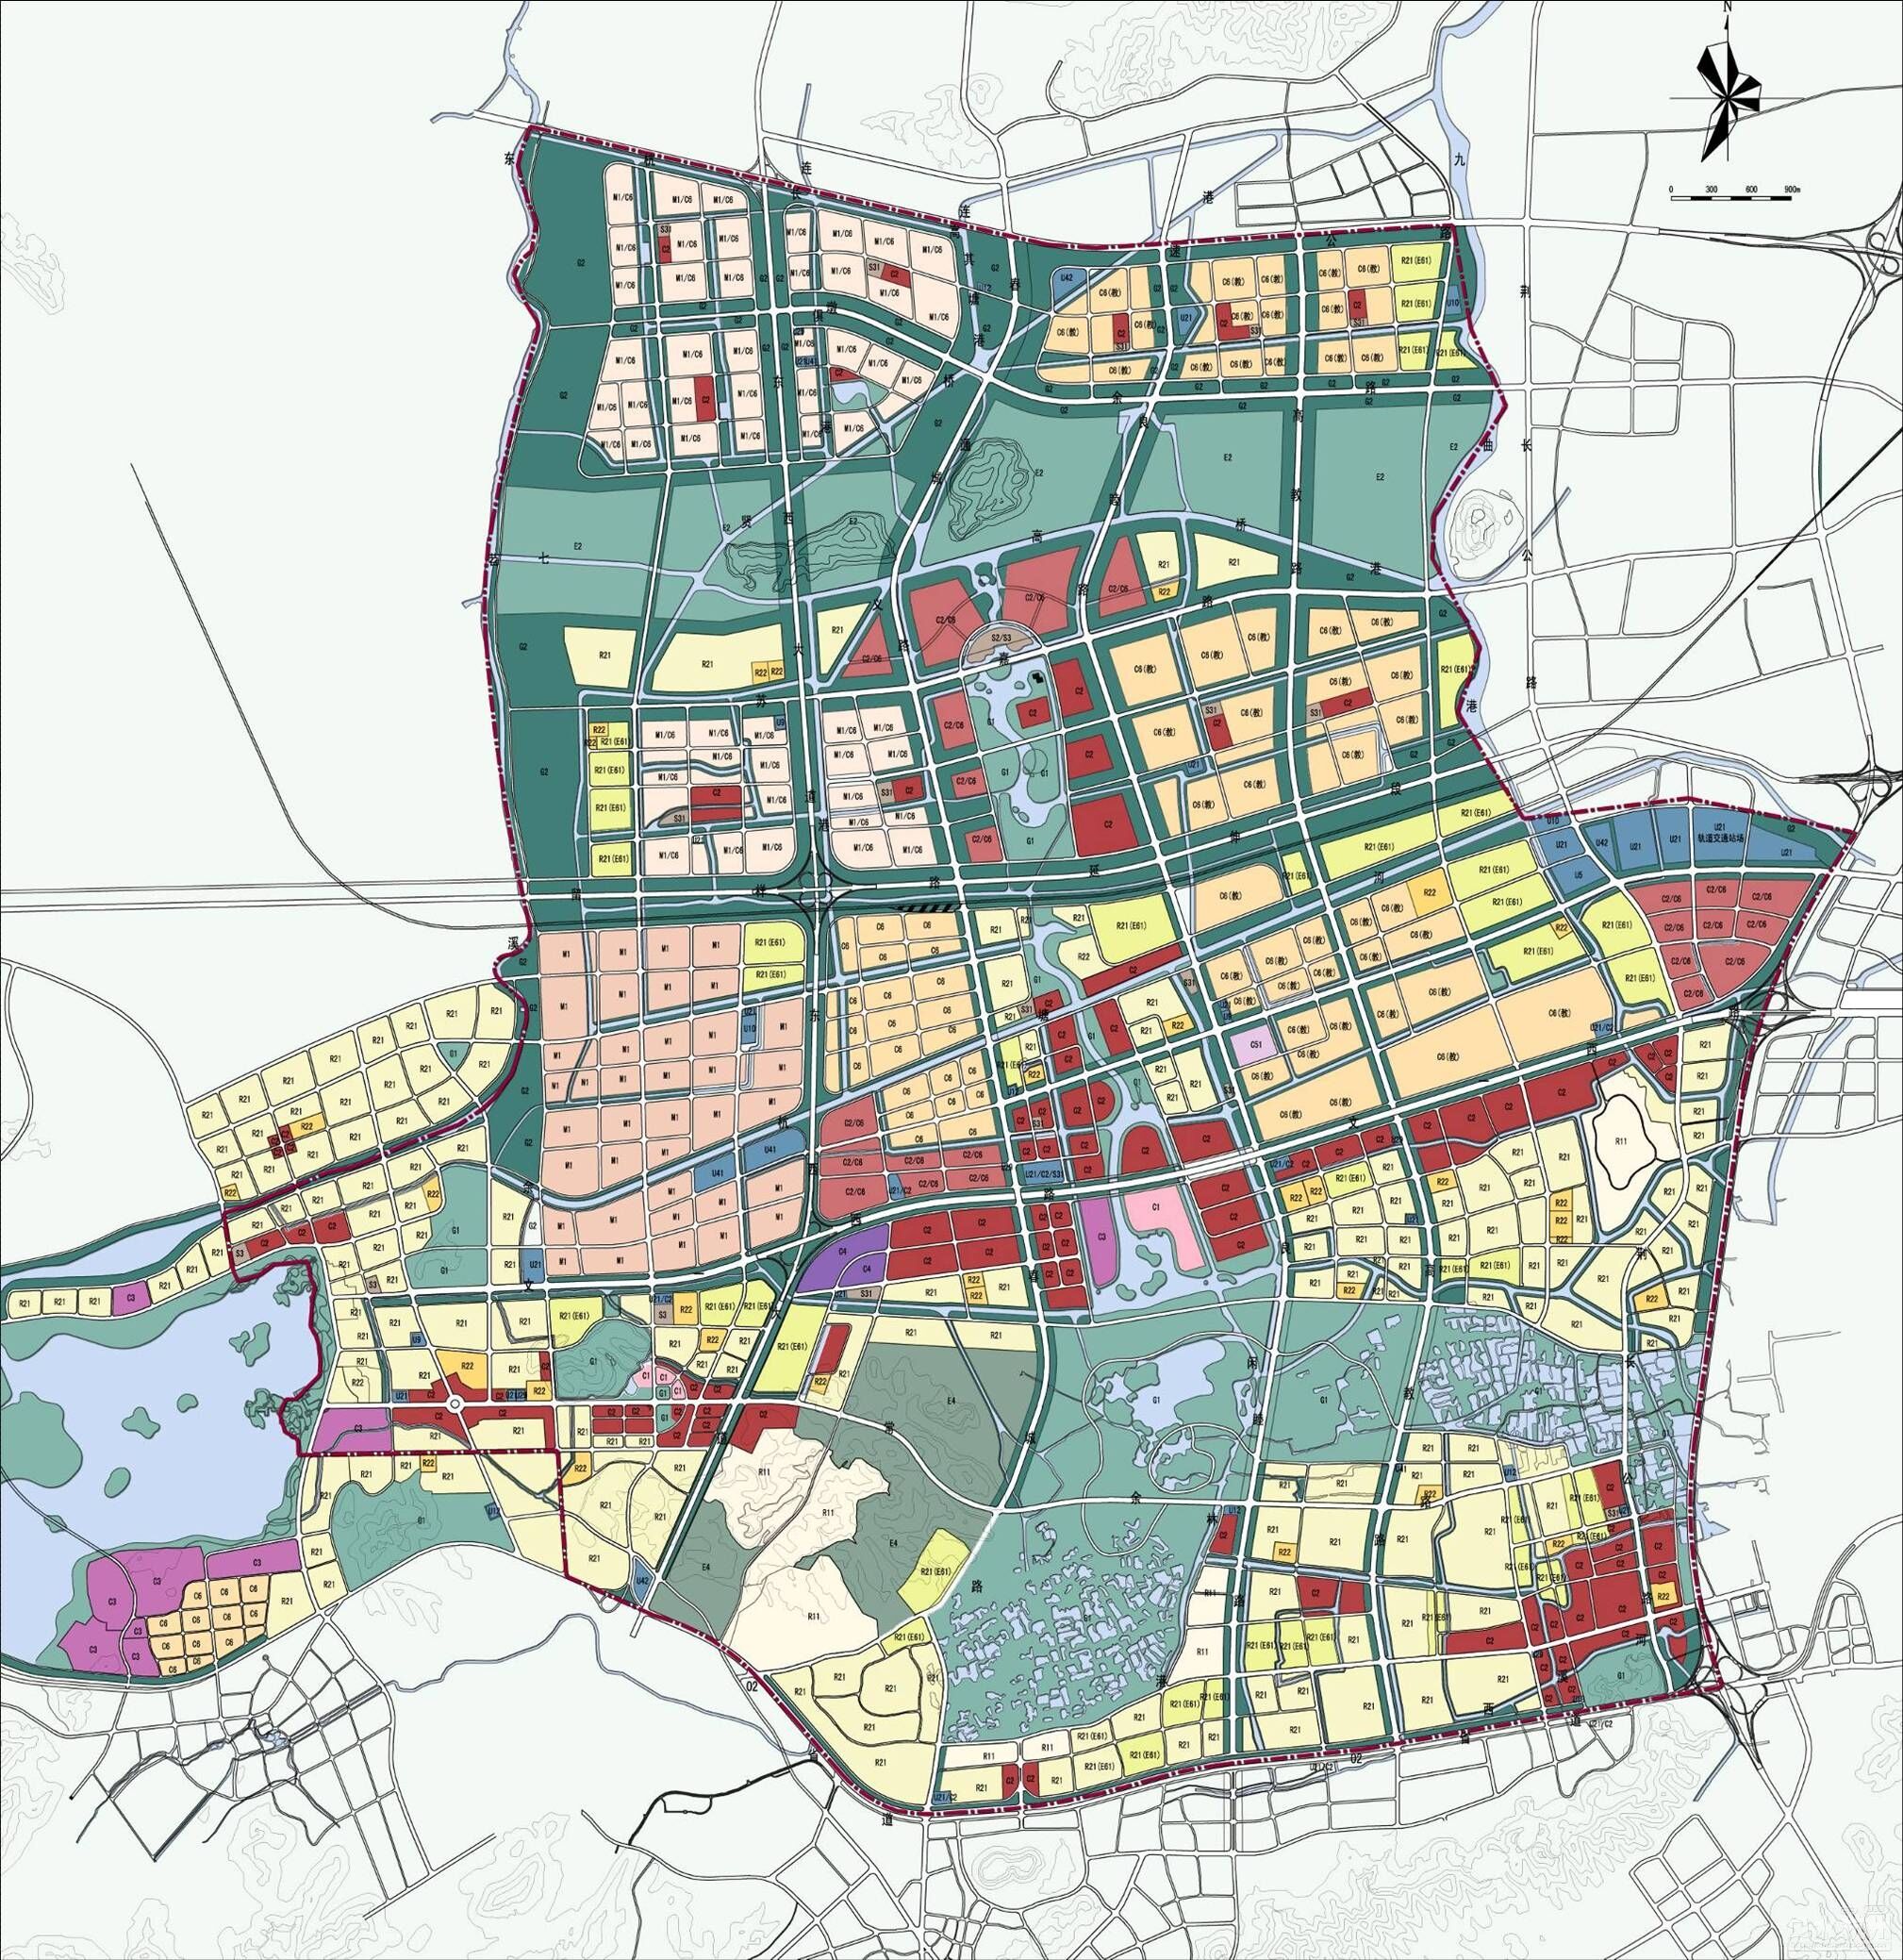 杭州市区规划图图片